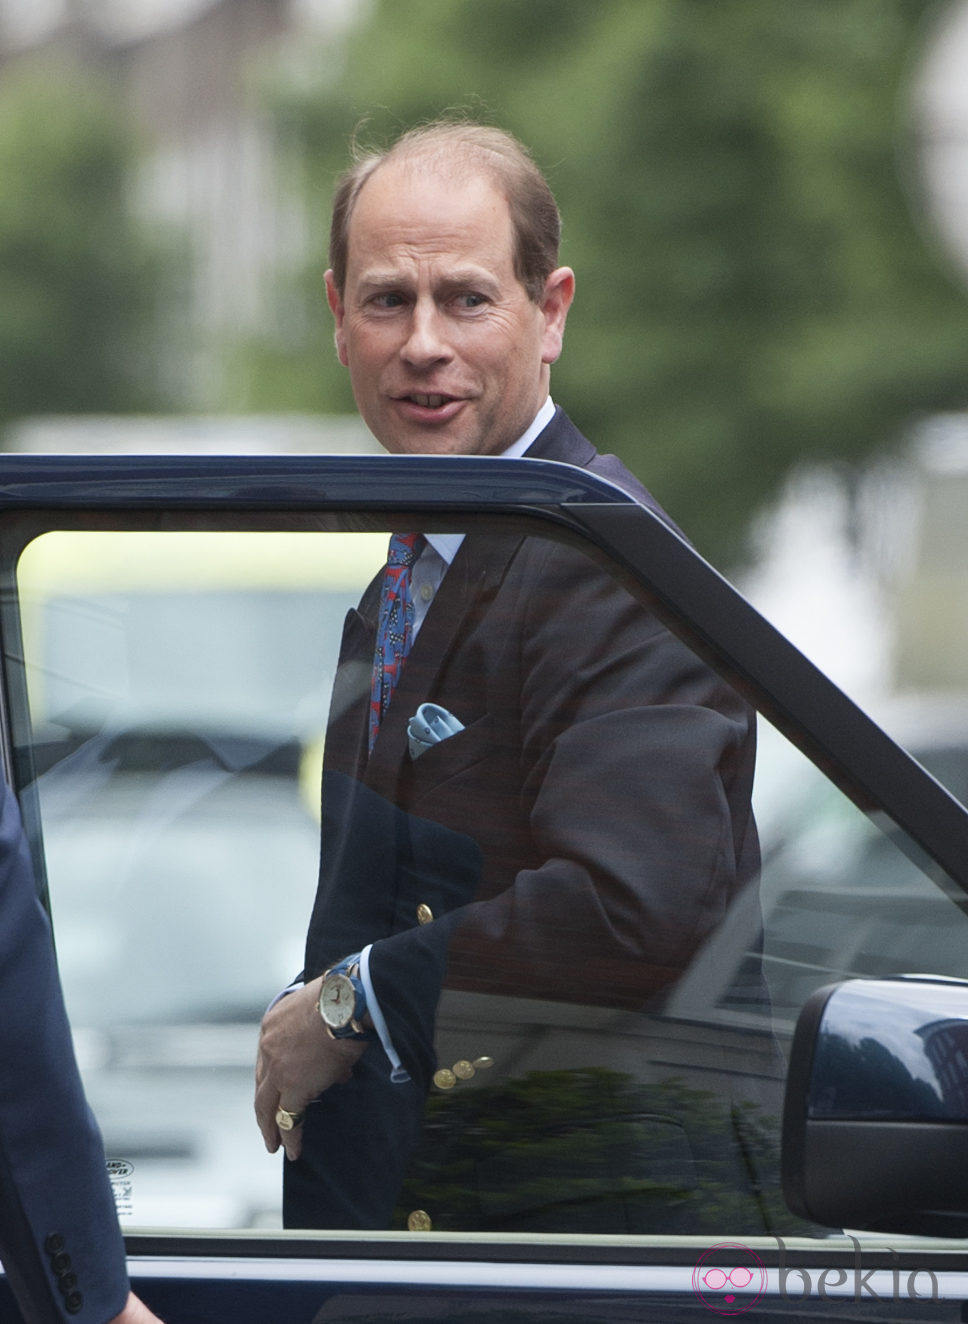 El Príncipe Eduardo visita al Duque de Edimburgo en el hospital el día de su 92 cumpleaños